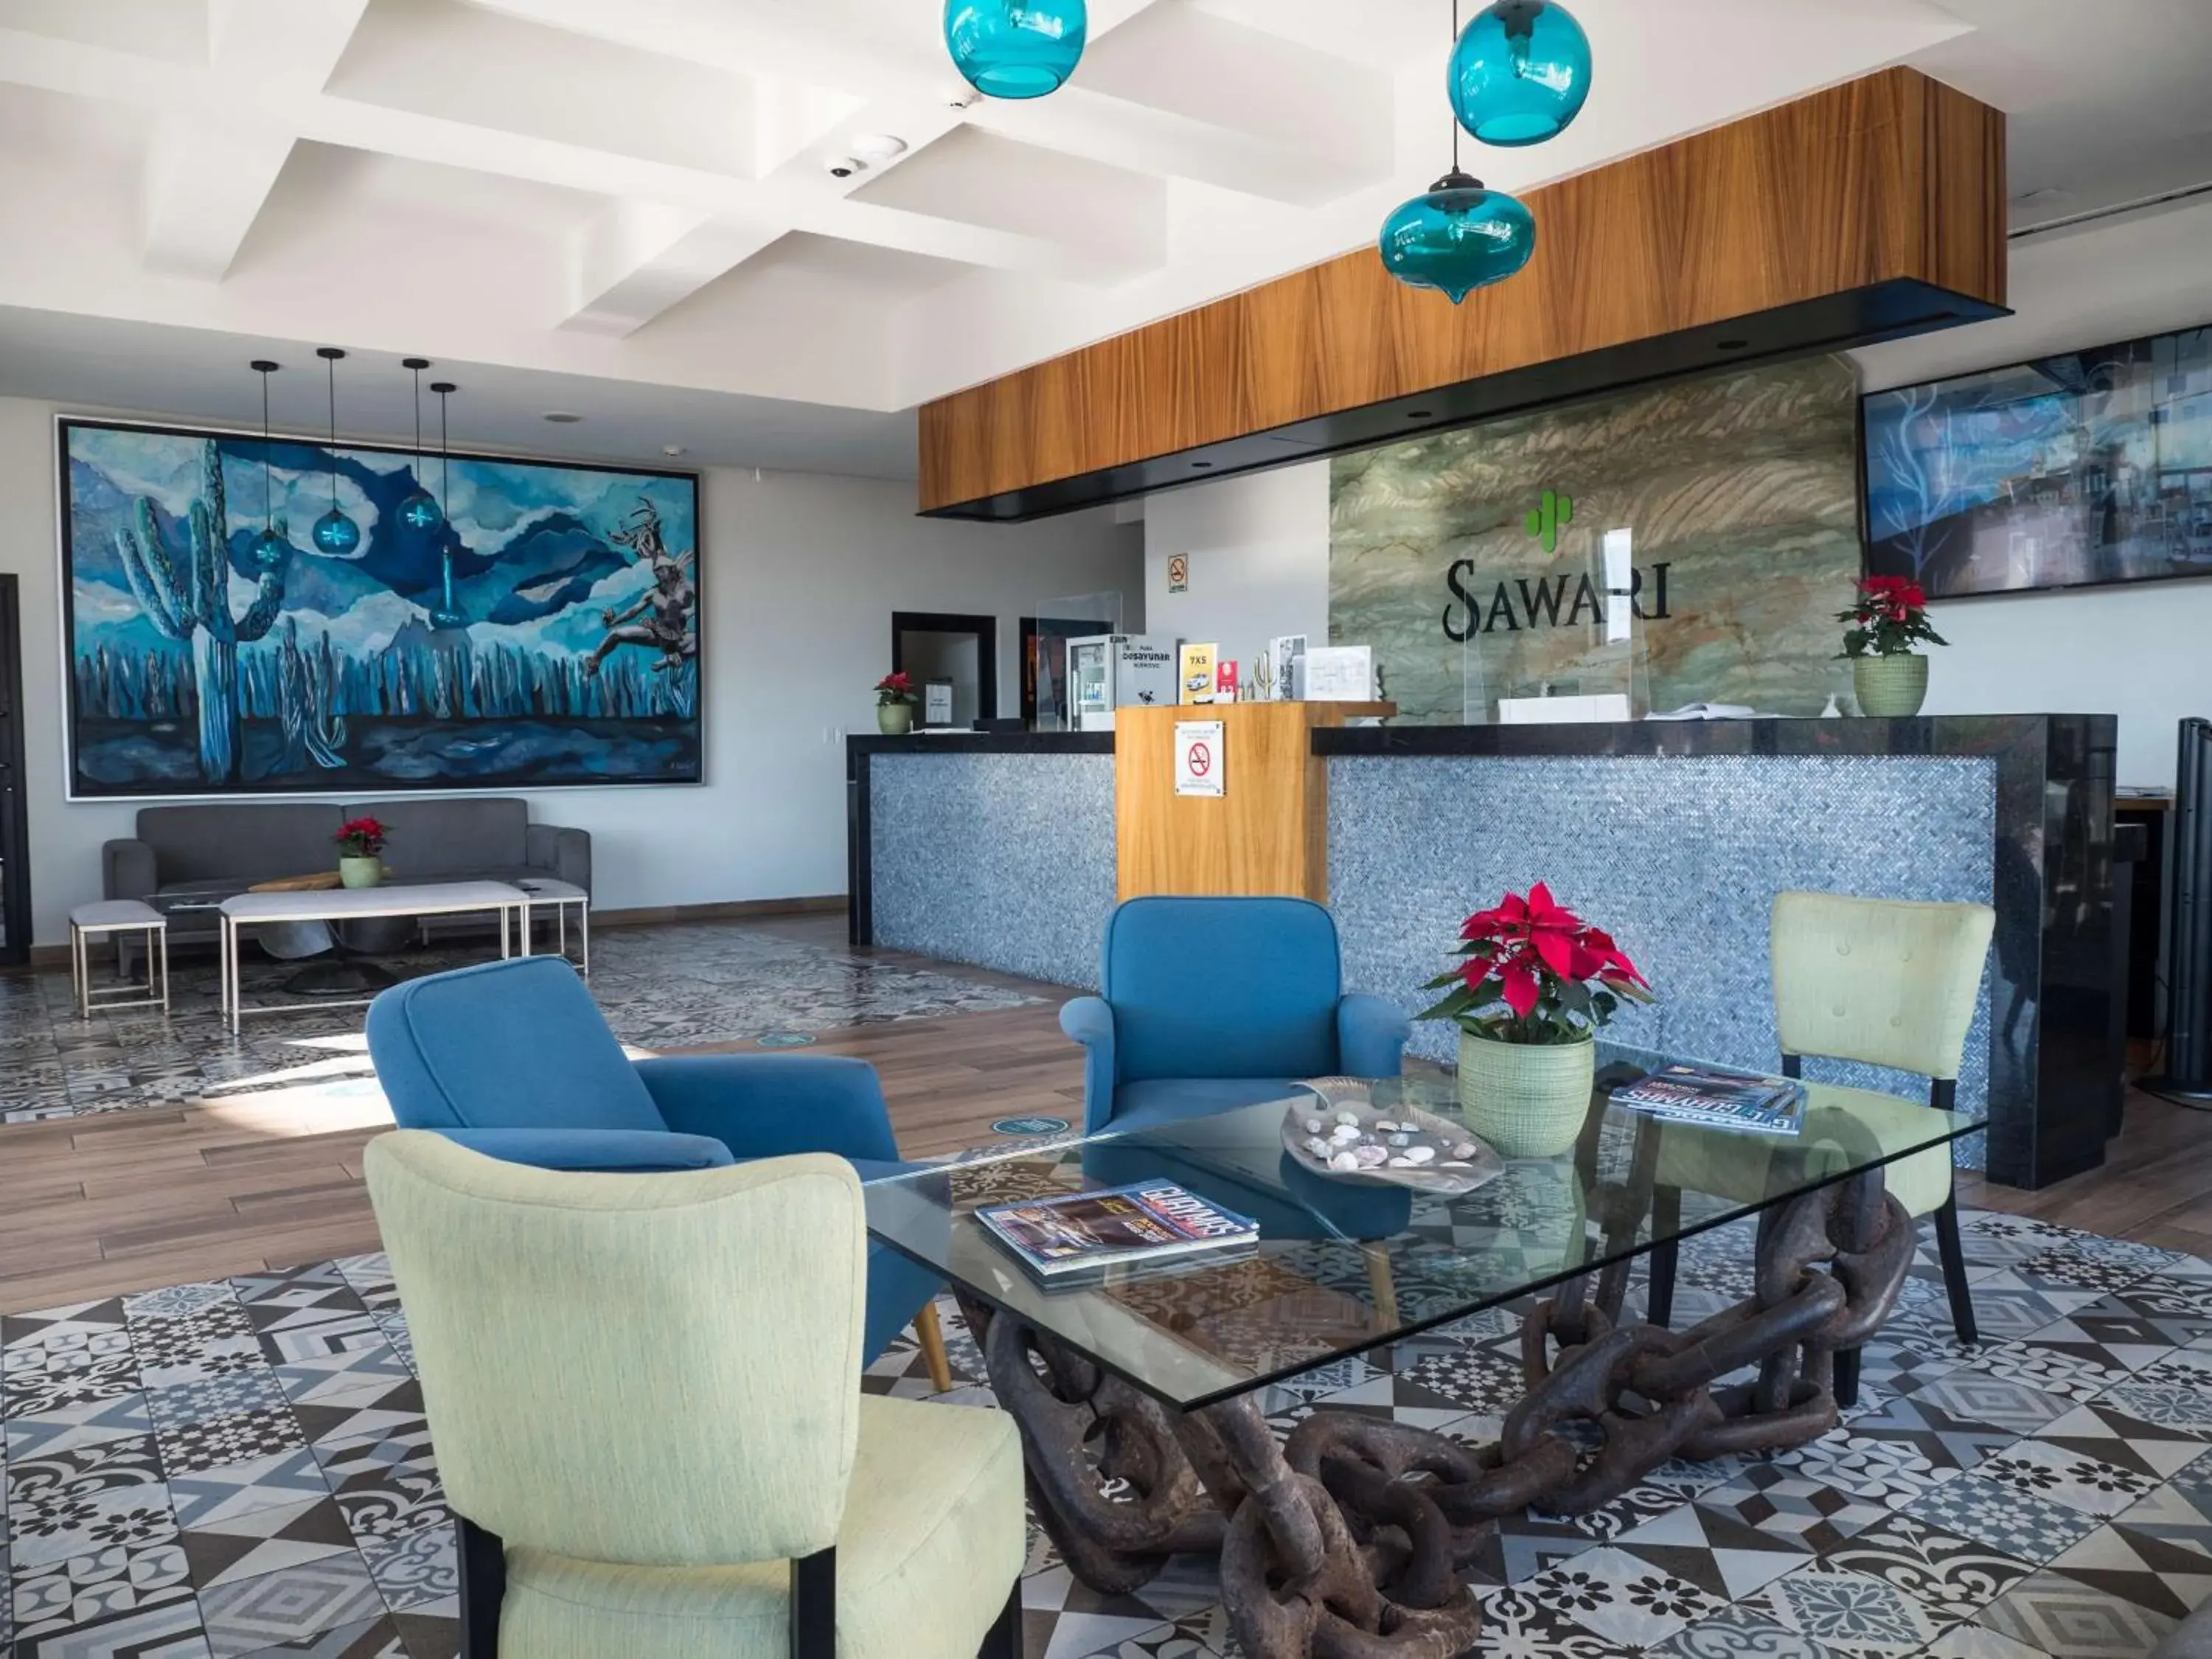 Lobby or reception, Lobby/Reception in Best Western Plus Sawari Hotel